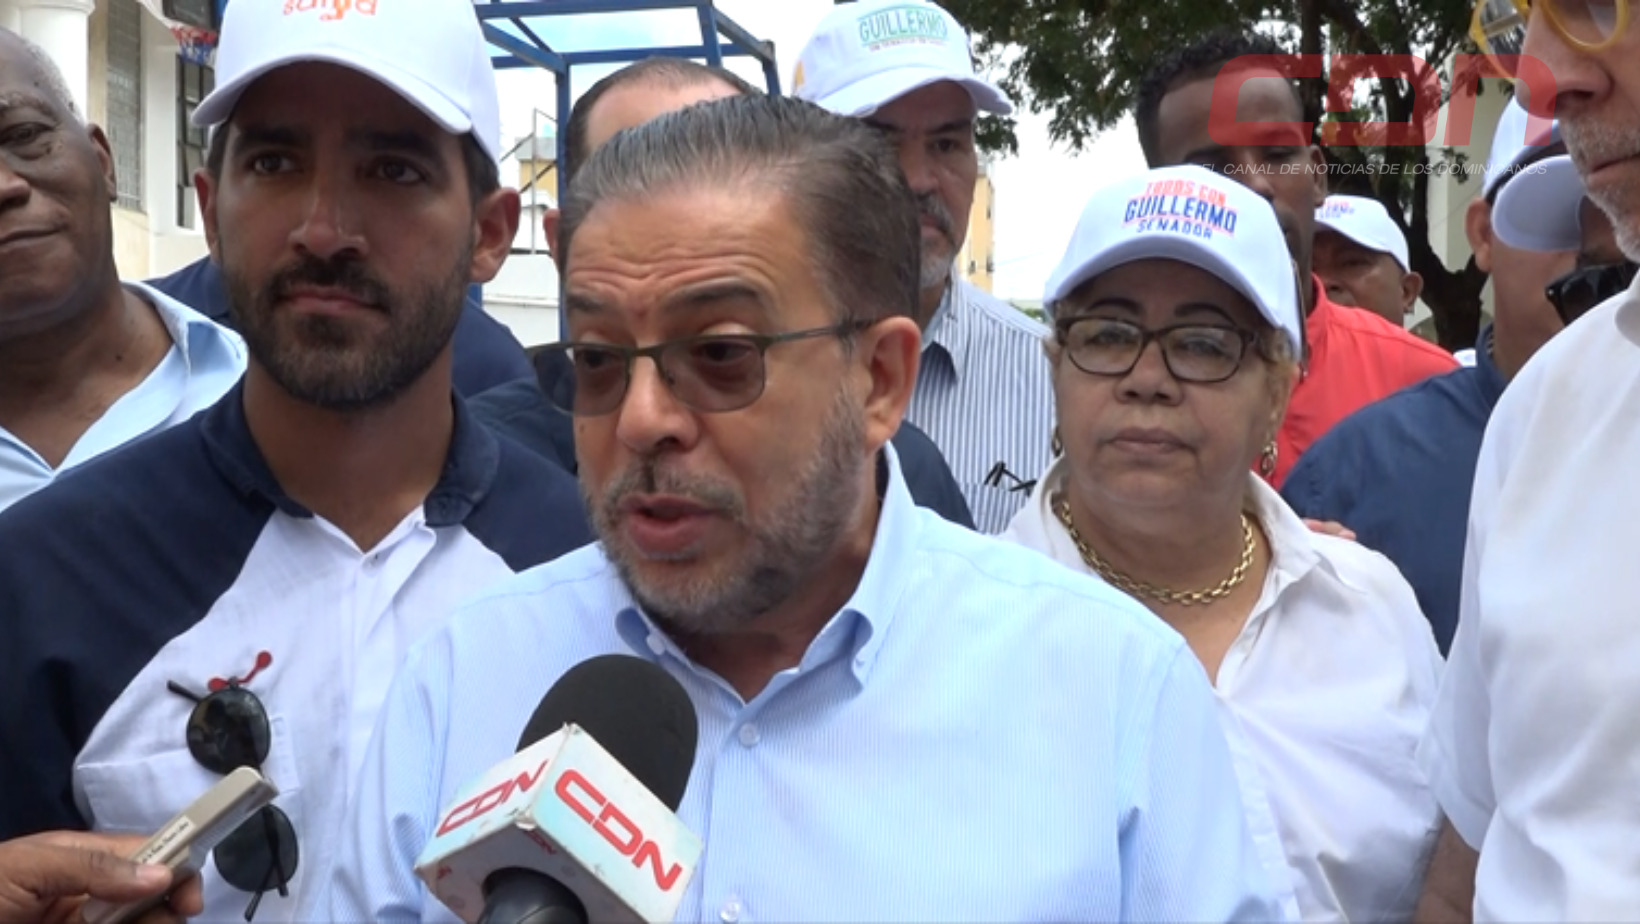 Guillermo emplaza presentar pruebas de comprar dirigentes oposición